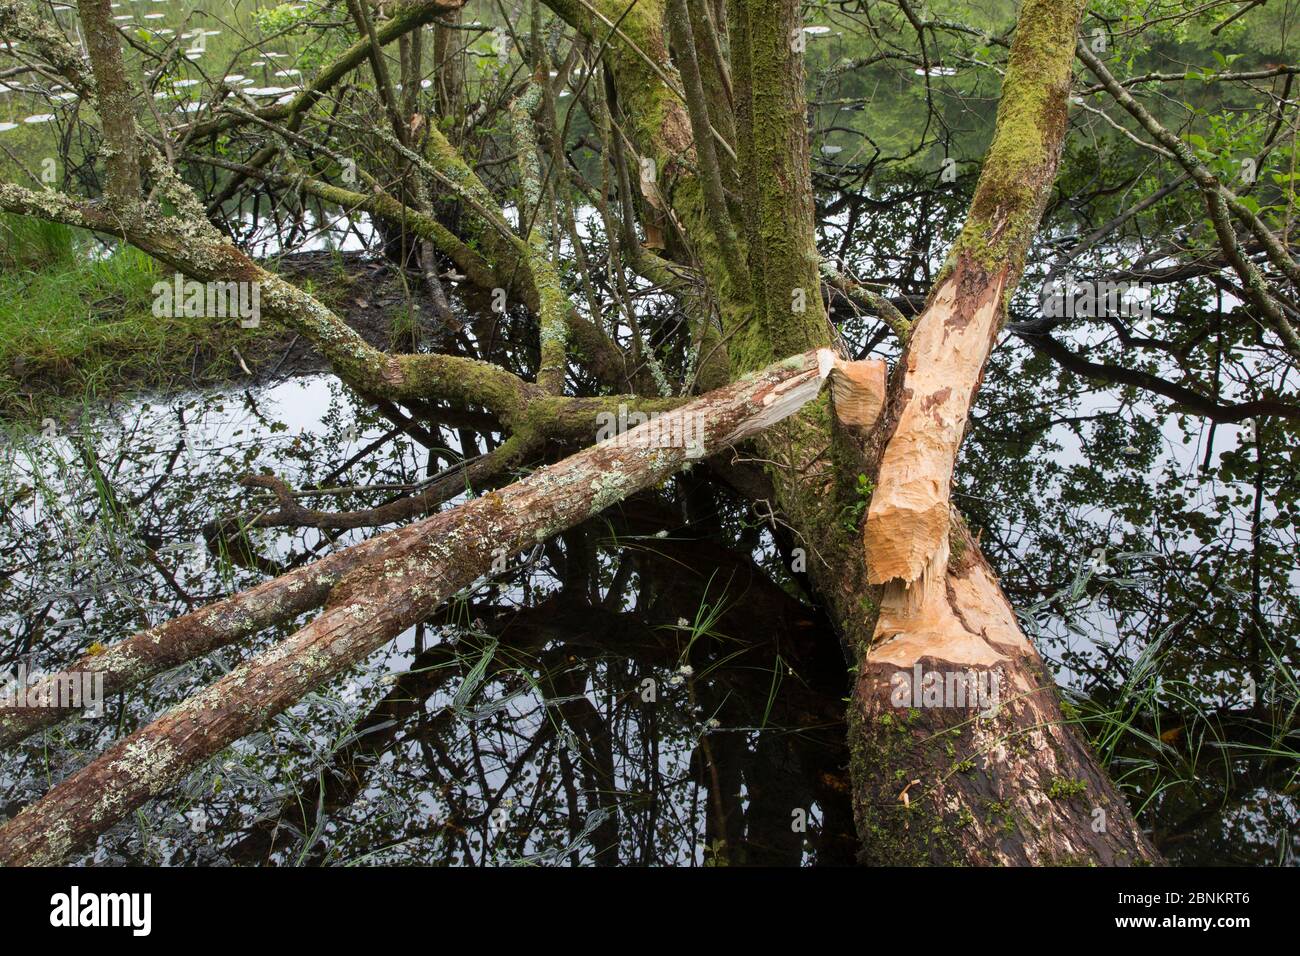 Albero abbattuto con segni di attività di alimentazione di castori eurasiatici (fibra di Castor), Foresta di Knapdale, Argyll, Scozia, Regno Unito, giugno. Foto Stock